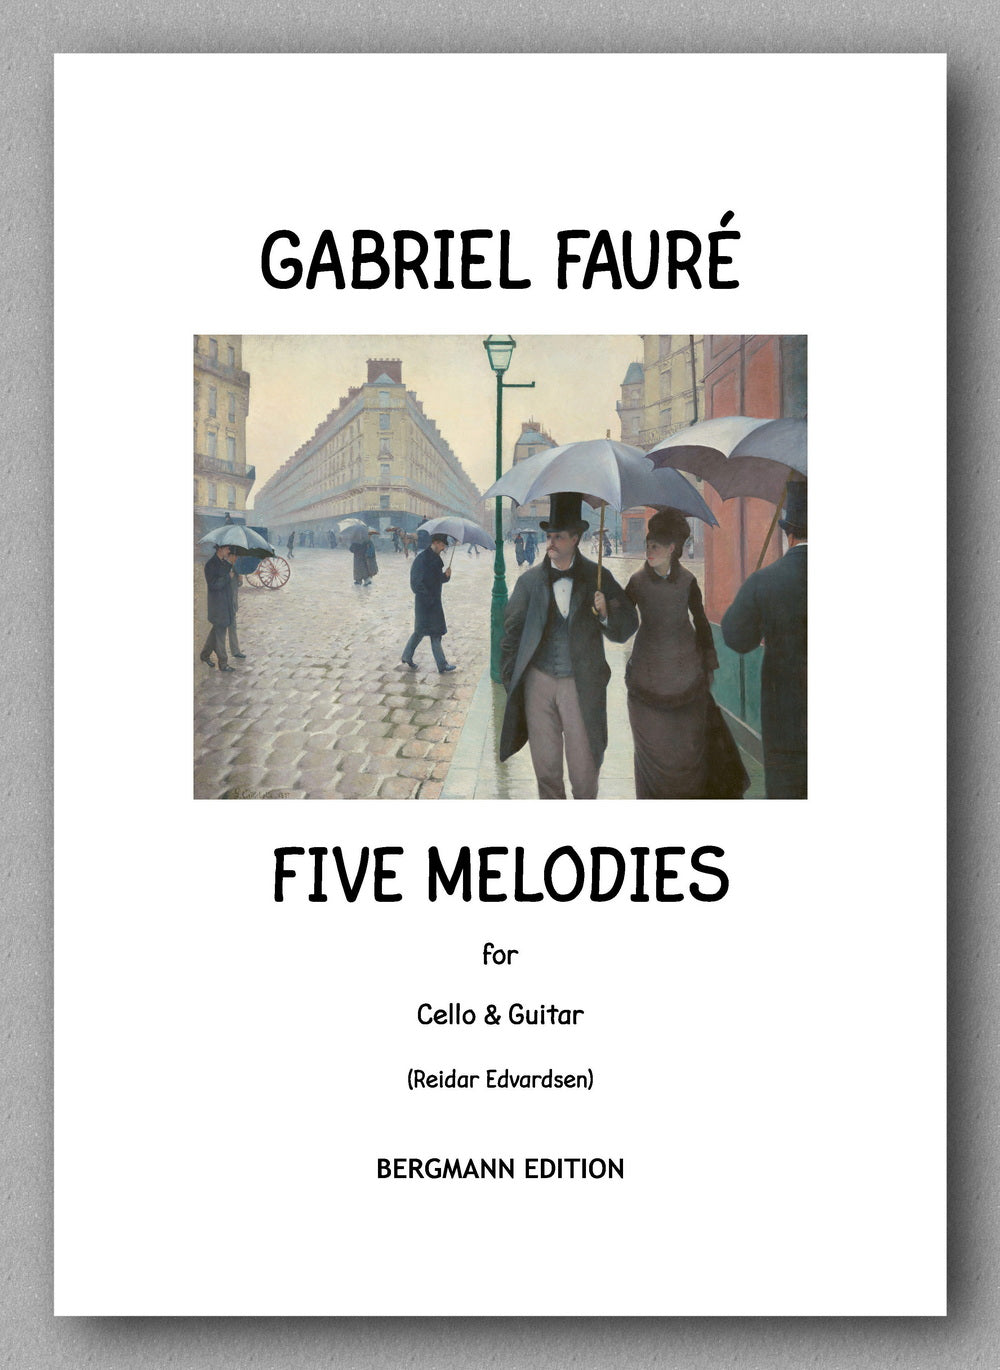 GABRIEL FAURÉ,  Five Melodies for Cello & Guitar - cover